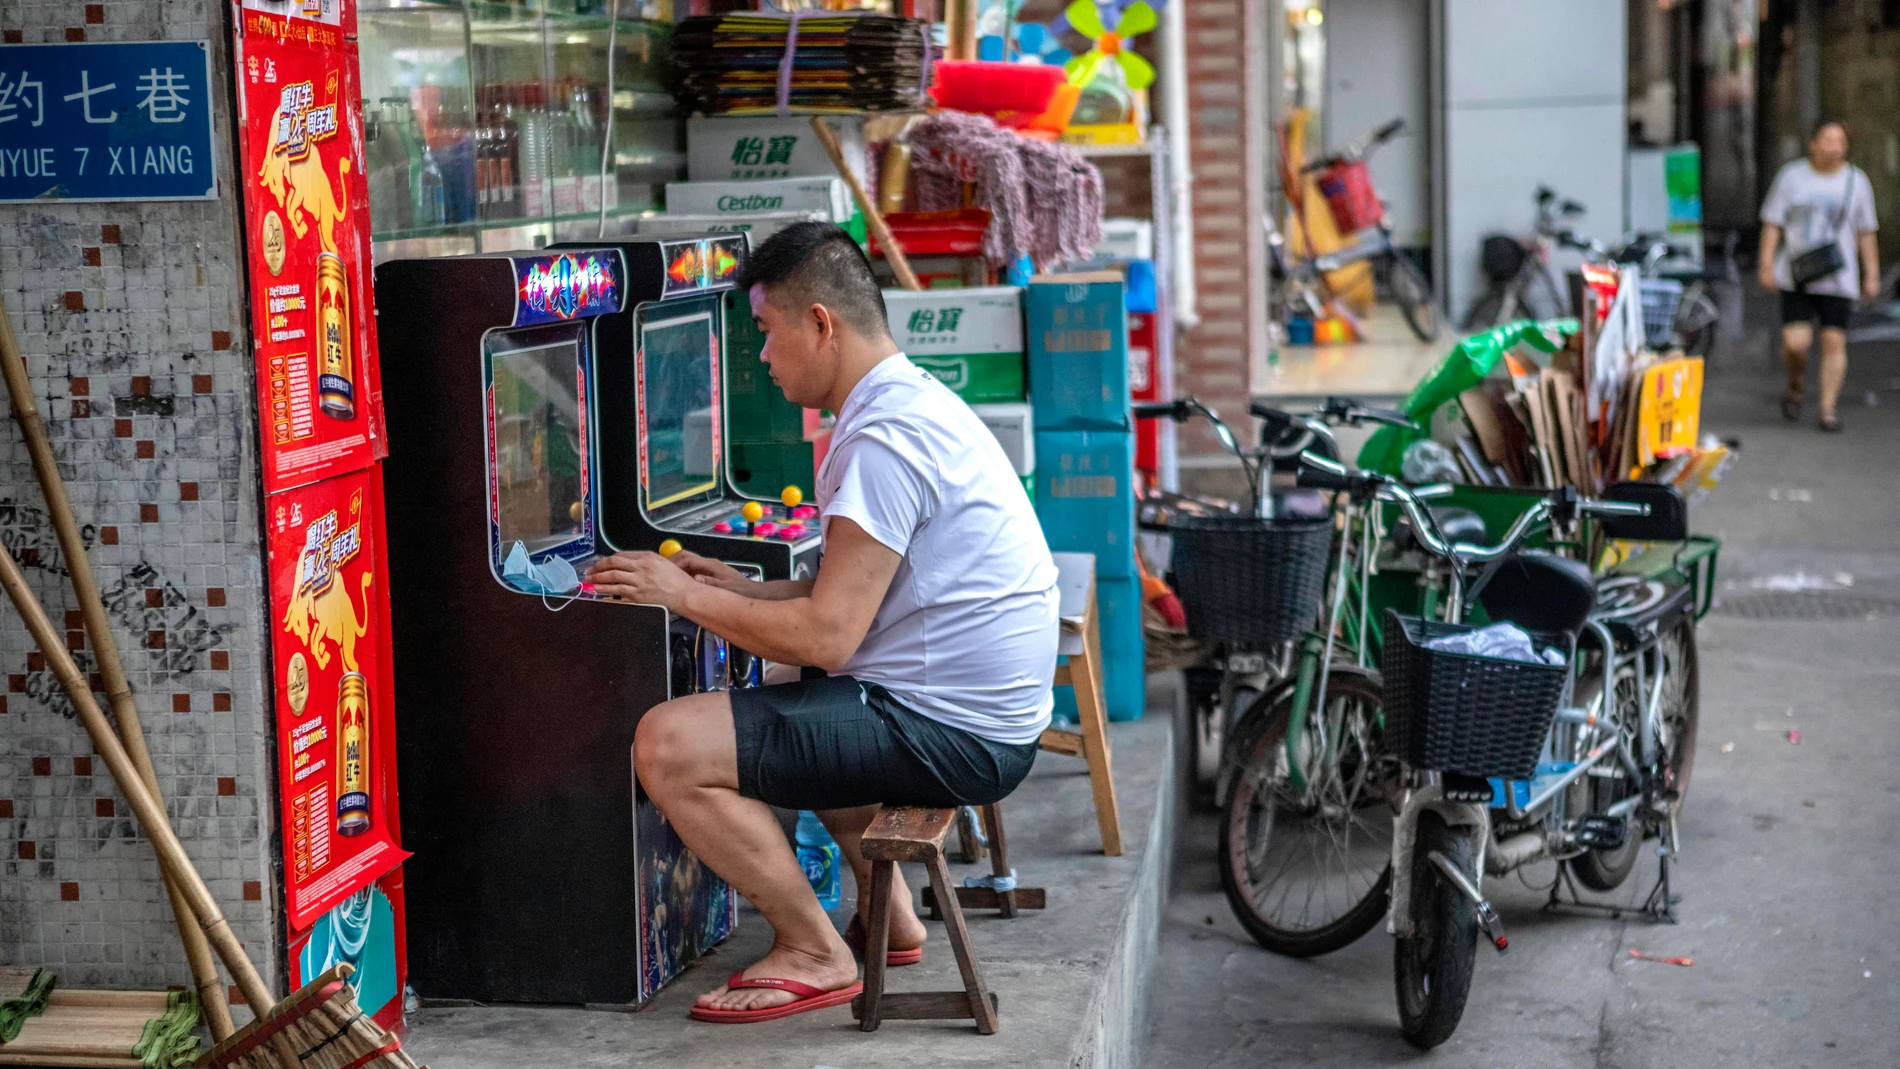 Un joven chino juega en una máquina recreativa. (Archivo)